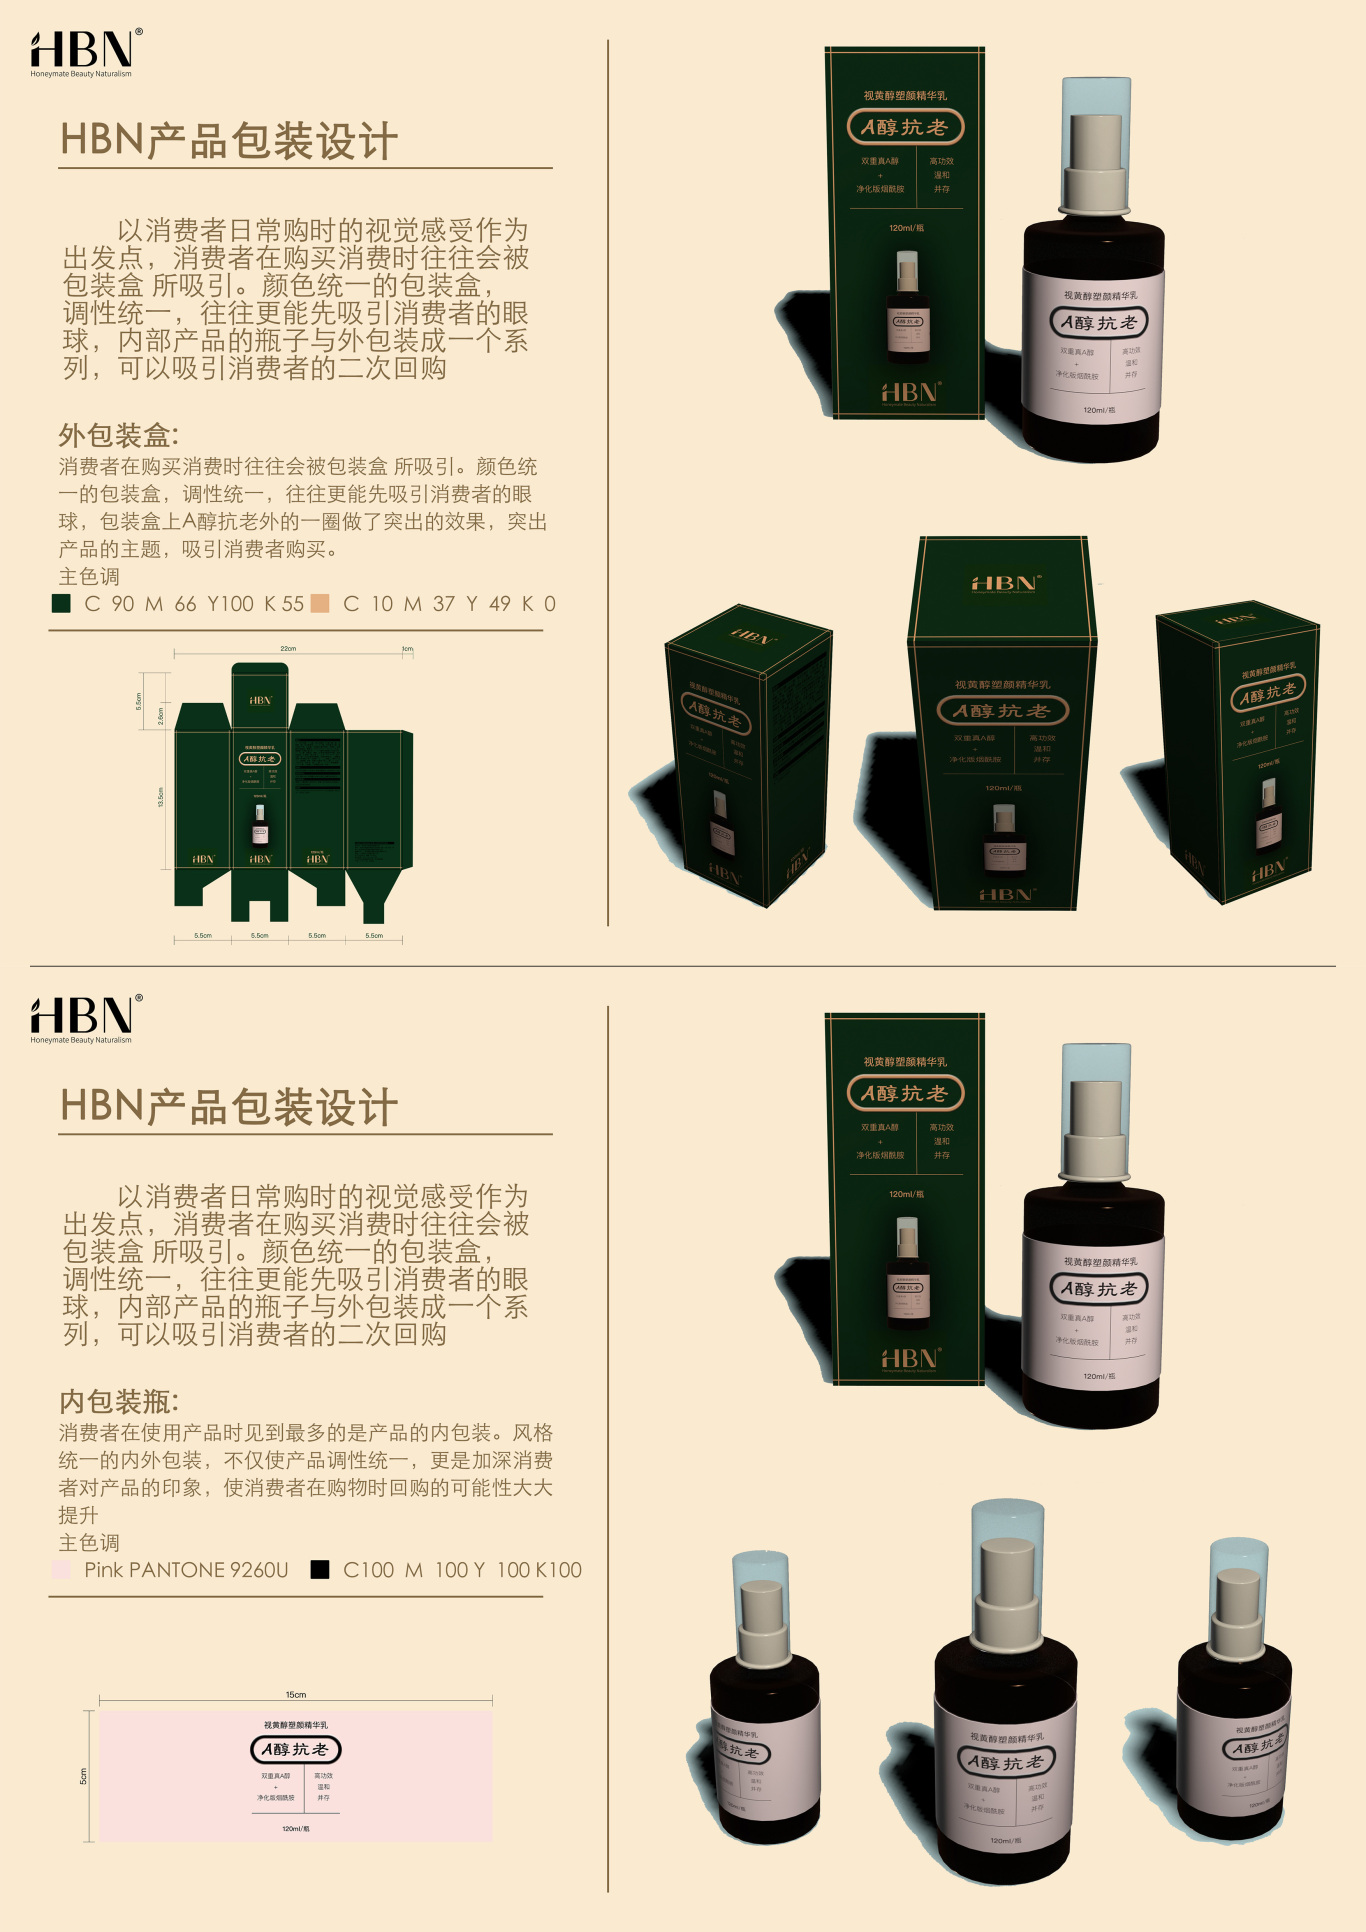 HBN抗老化妆品包装设计图2